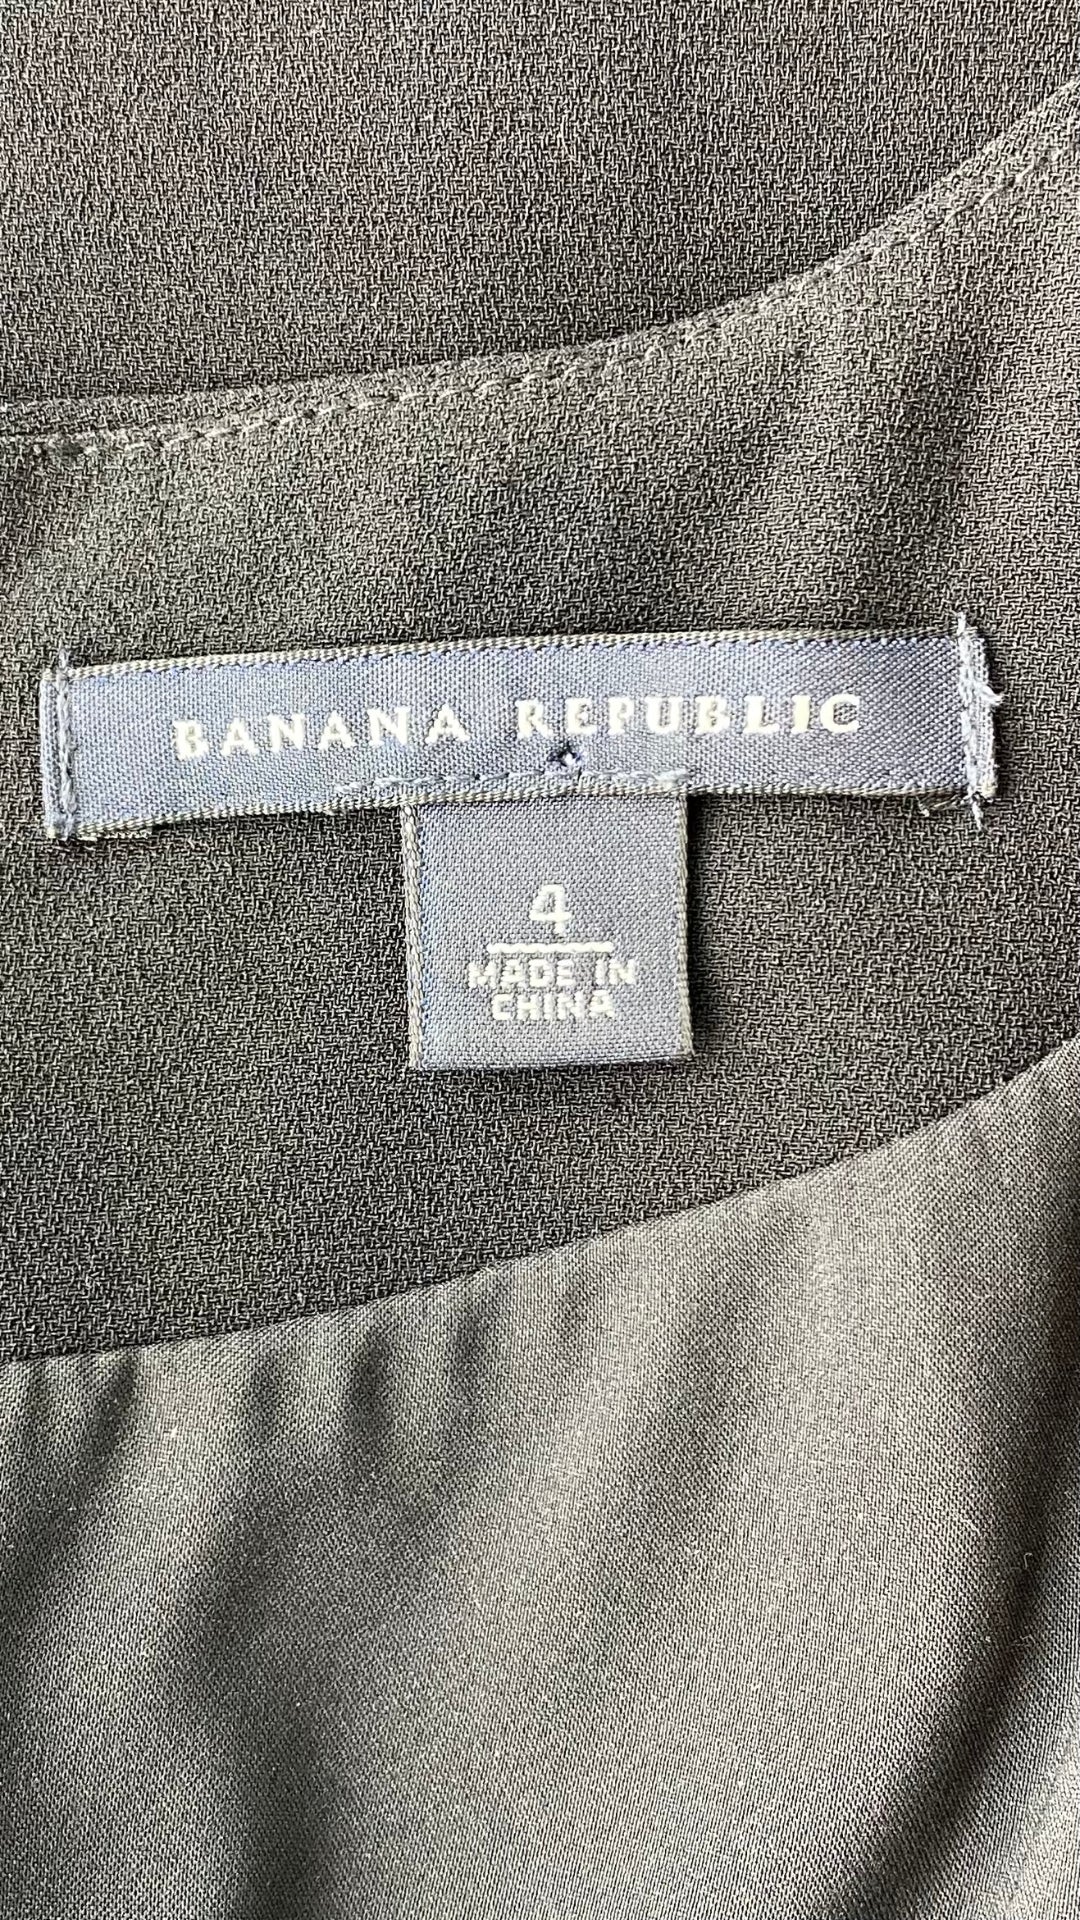 Robe noire parfaite Banana Republic. Vue de l'étiquette de marque et taille.